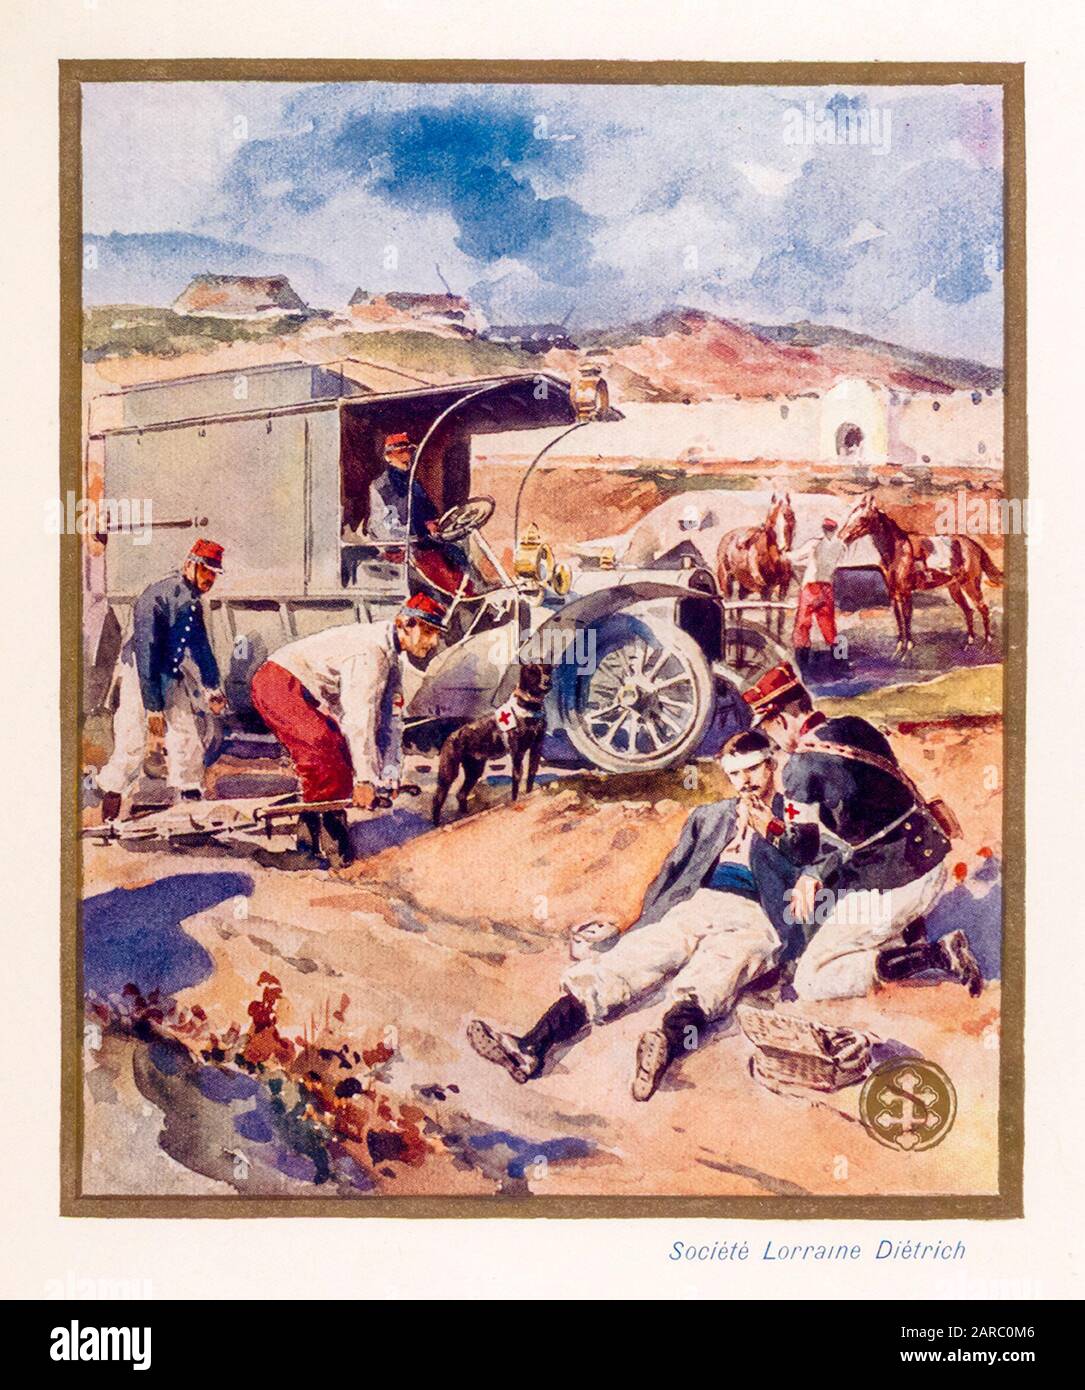 Lorraine Diétrich Automobiles utilizzato come ambulanza durante la guerra, illustrazione promozionale 1909 Foto Stock